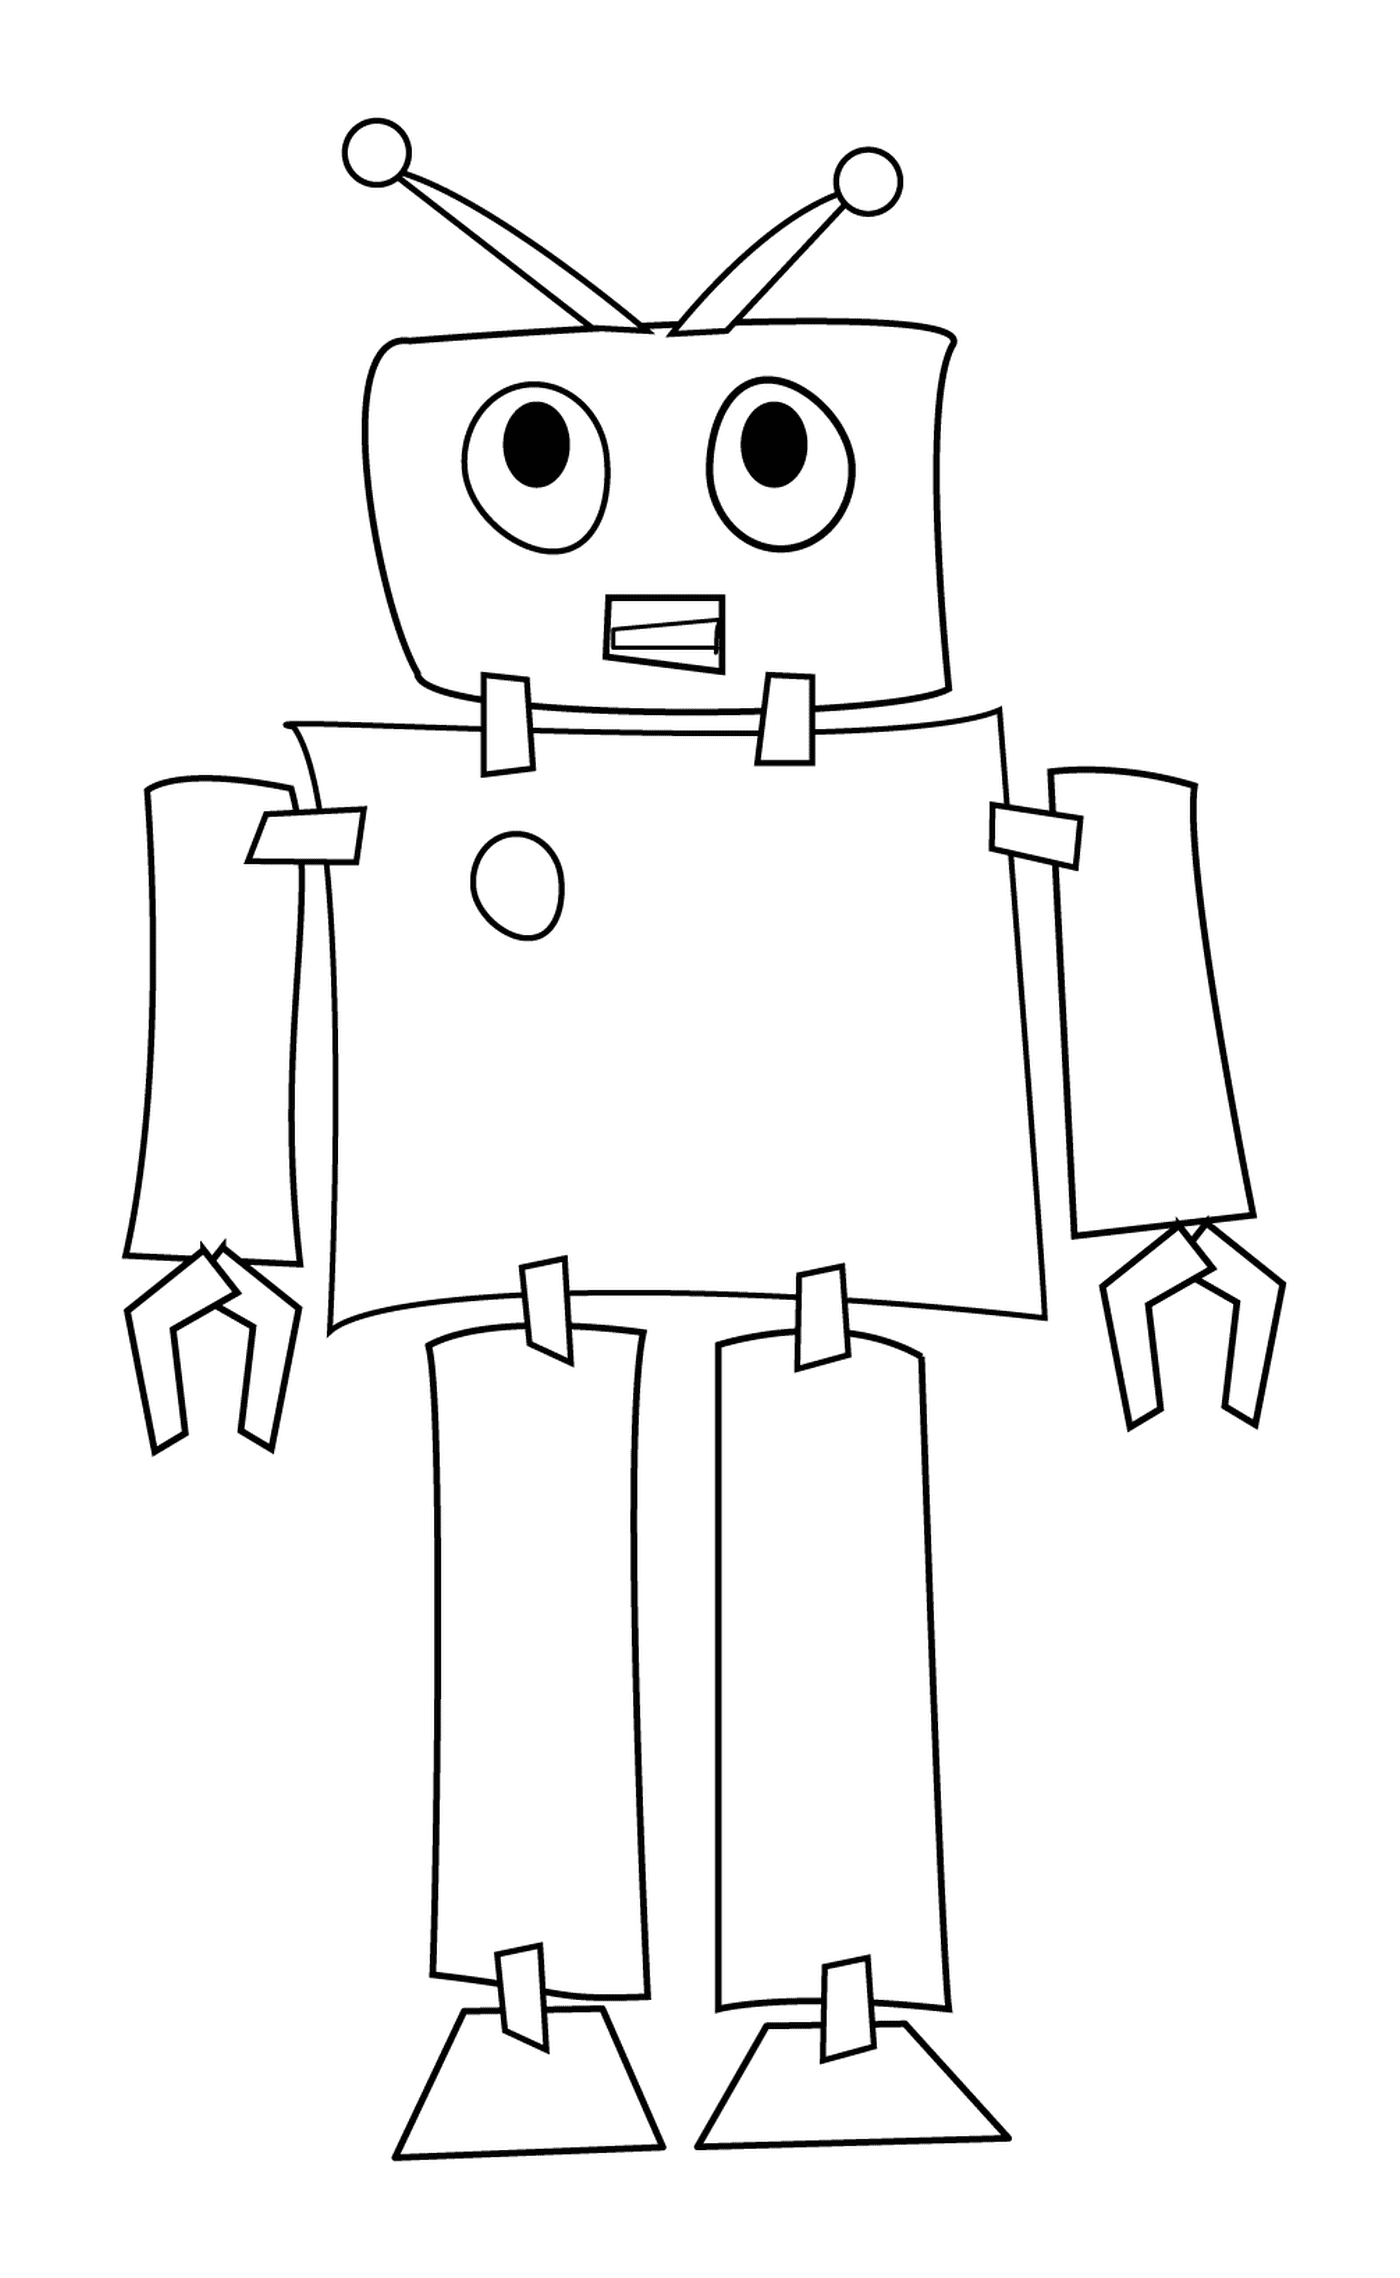  Computer programmed robot 